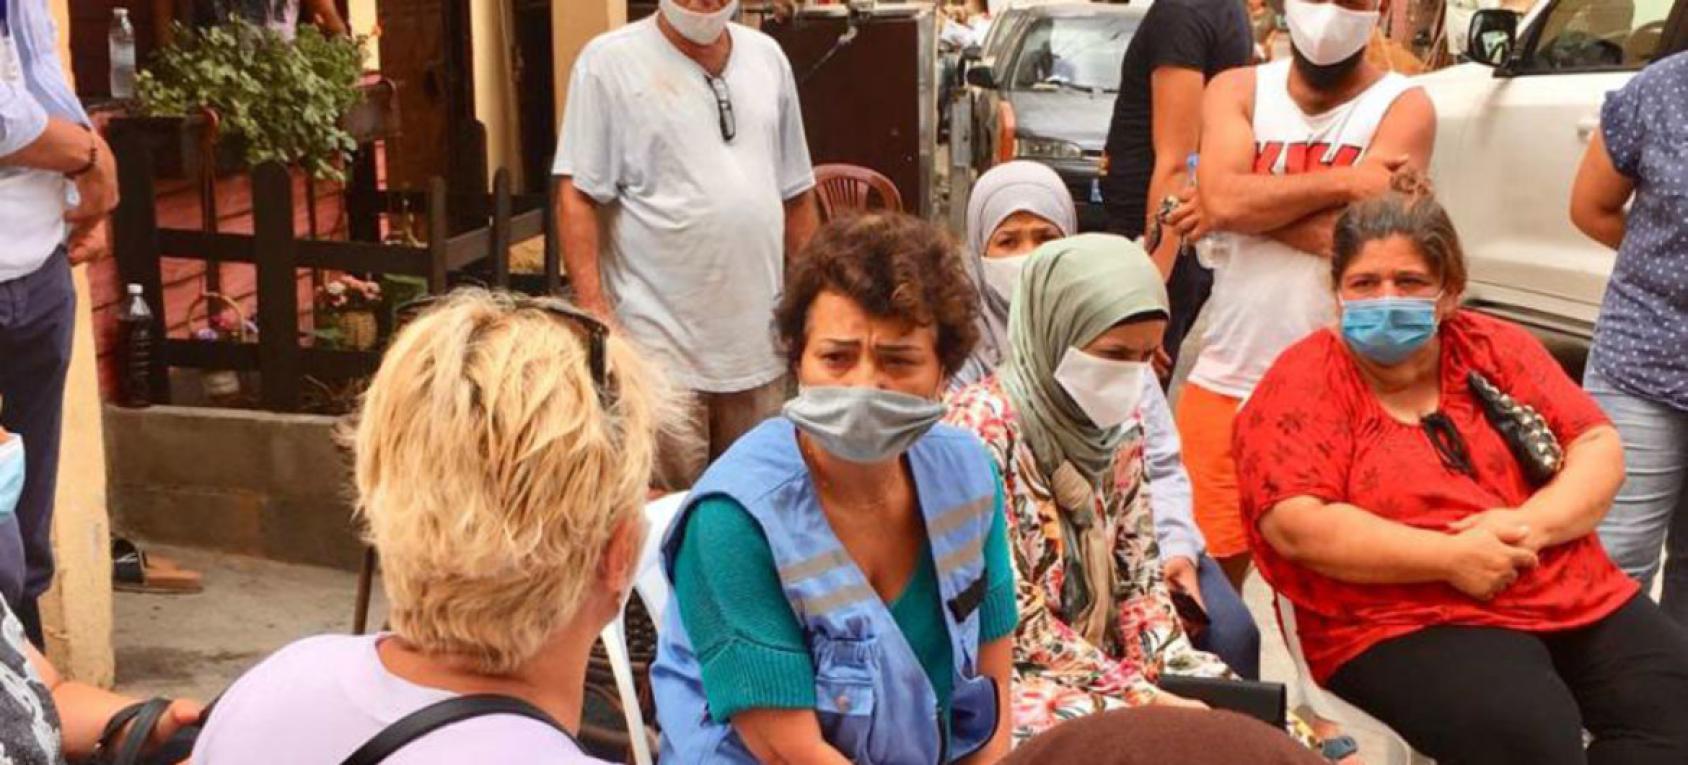 La Coordonnatrice résidente de l'ONU au Liban est assise dans un espace extérieur en compagnie d'autres personnes, dont une femme, avec laquelle elle s'entretient.